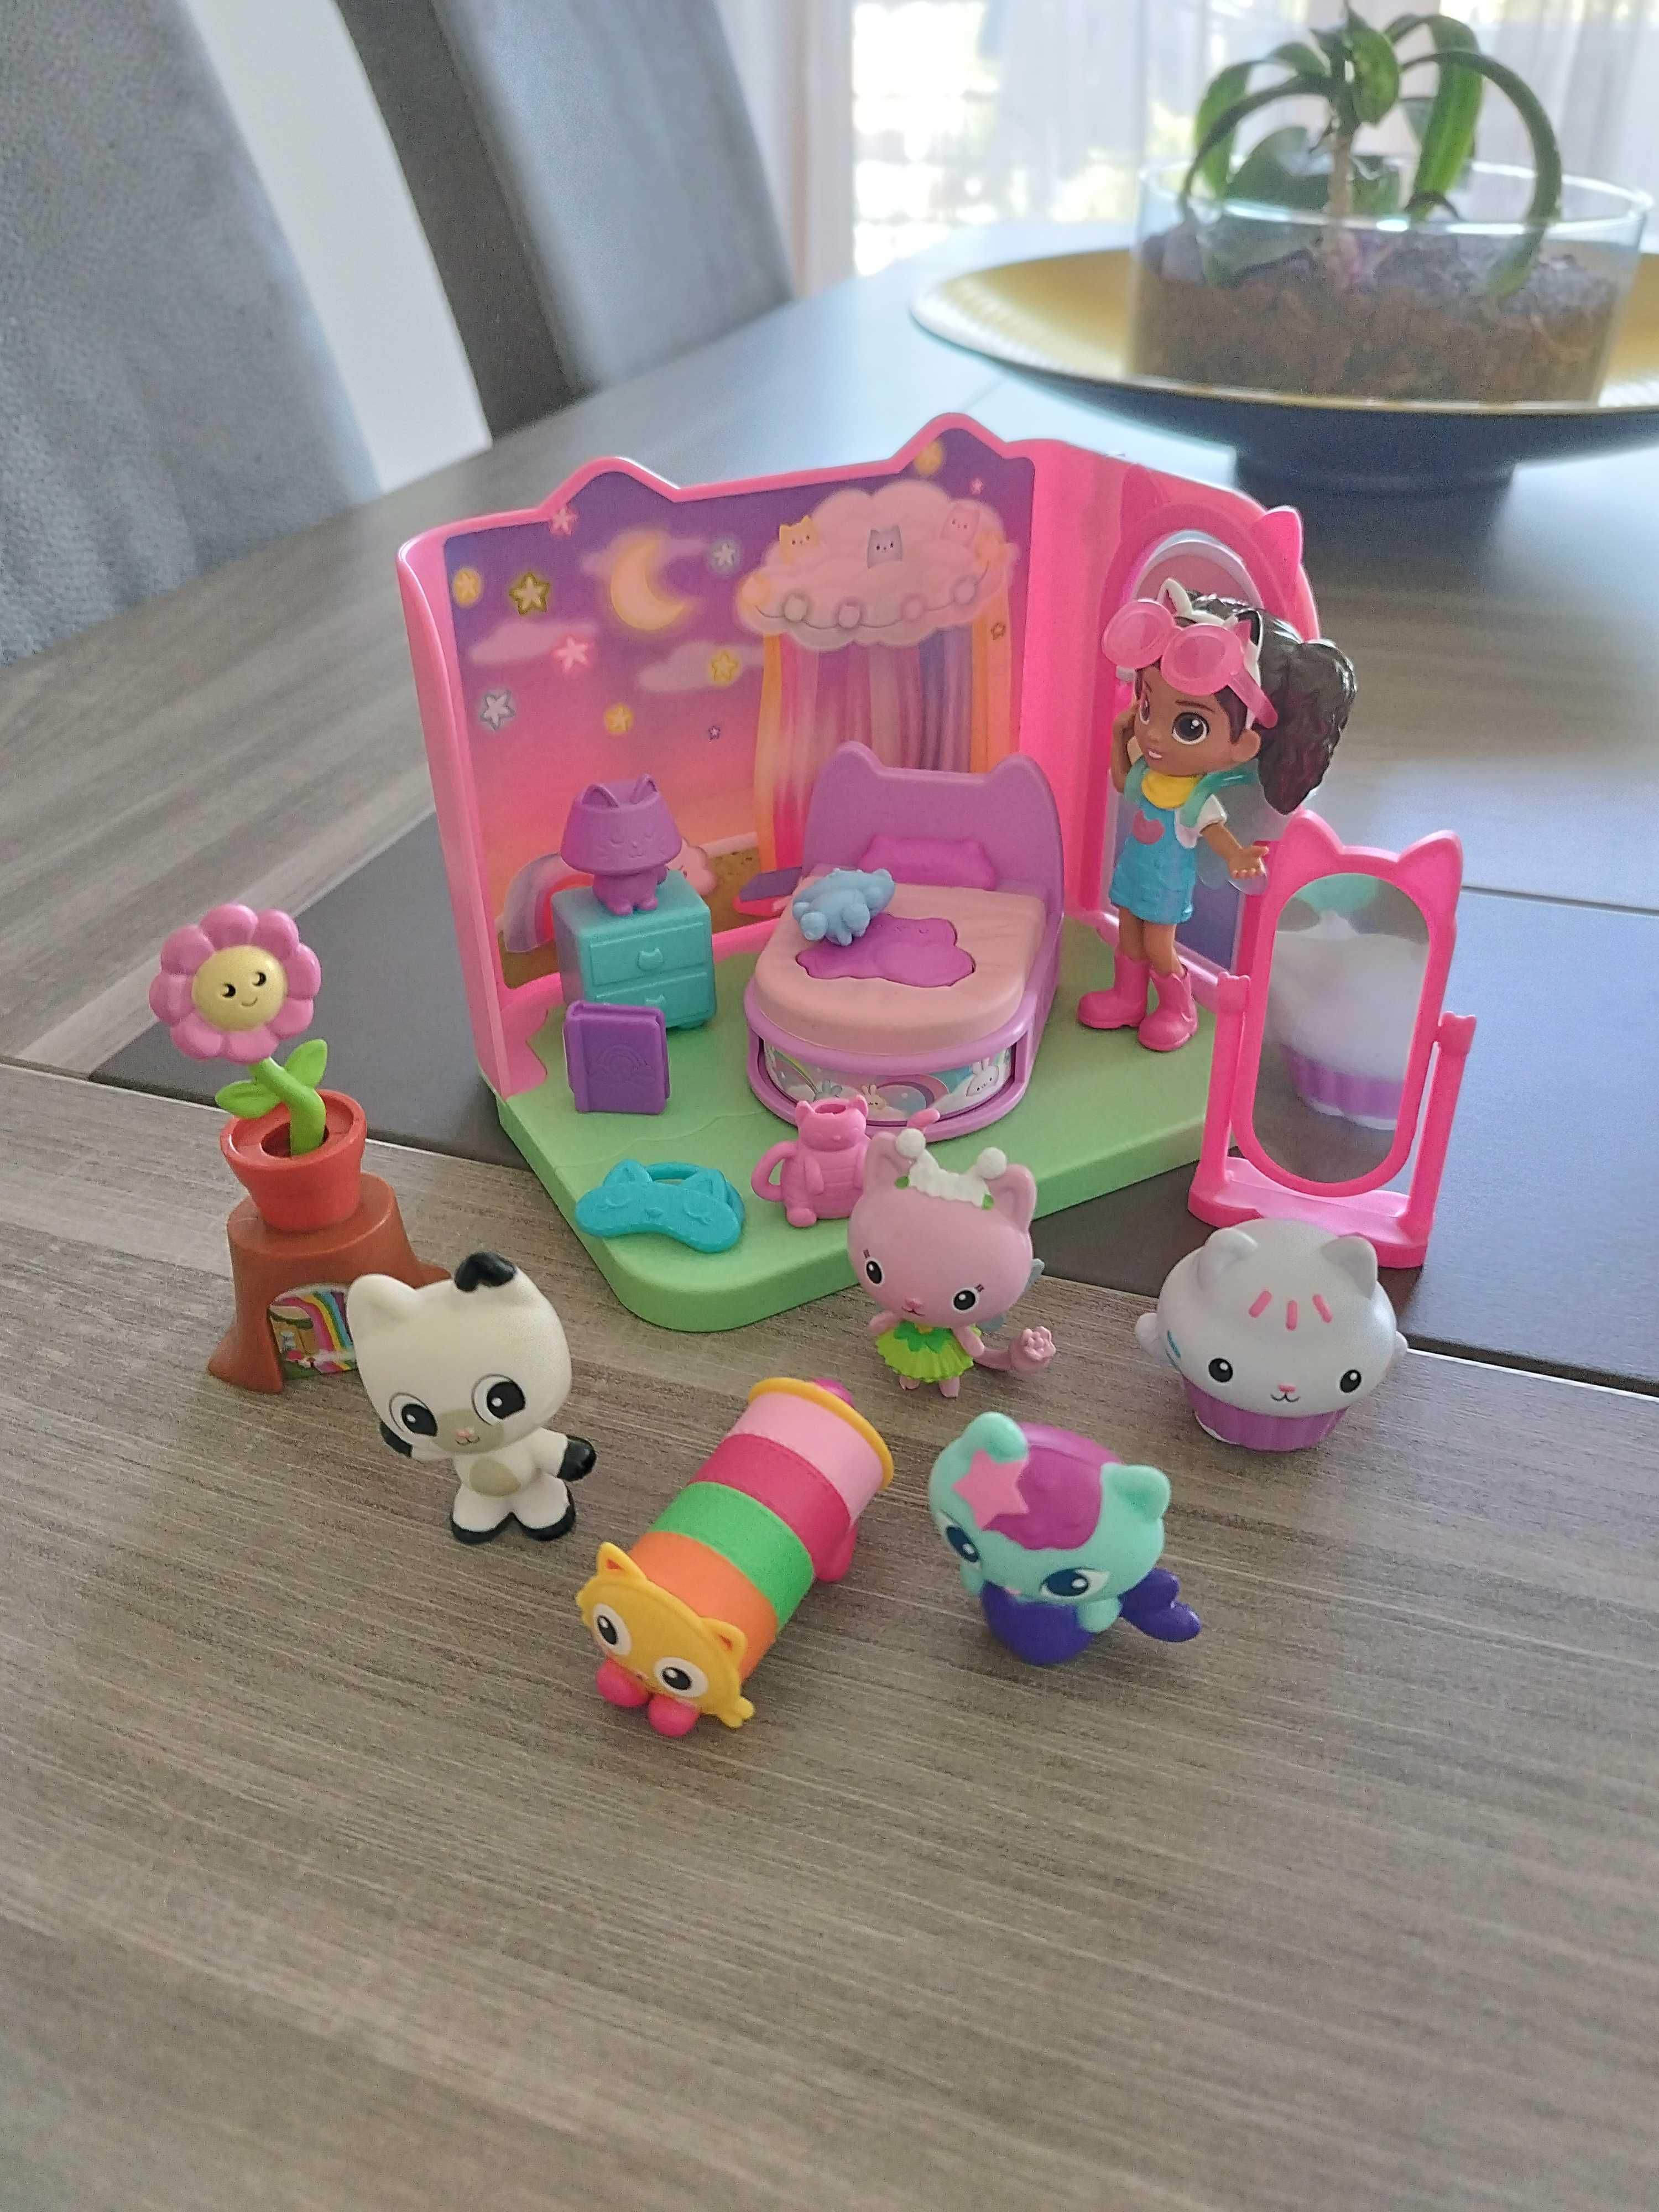 Casa de Bonecas da Gabby - Quarto com figuras + Orelhas de gato (25€).